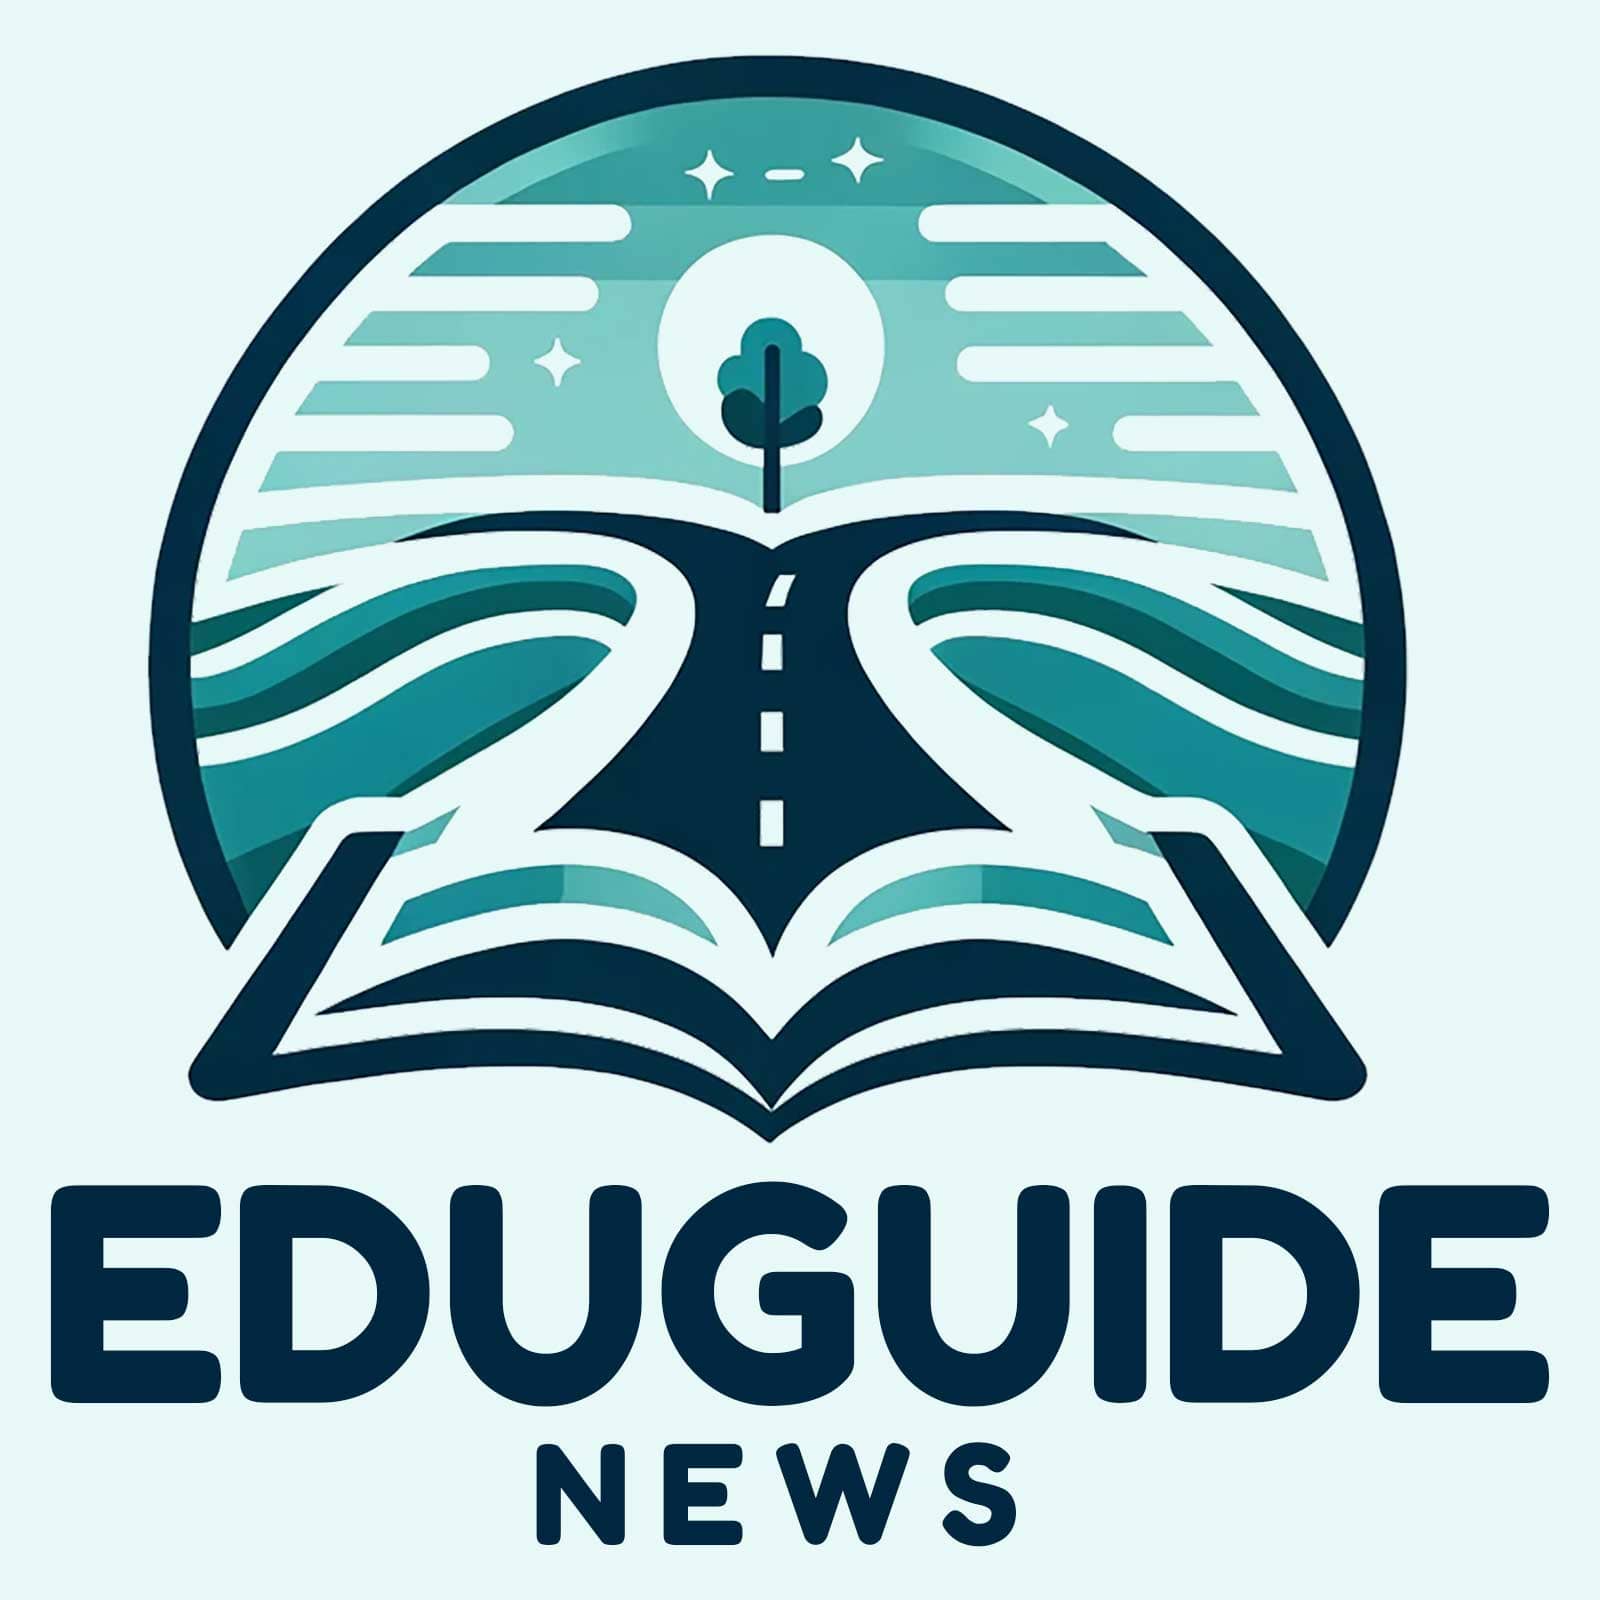 EDUGUIDE NEWS logo